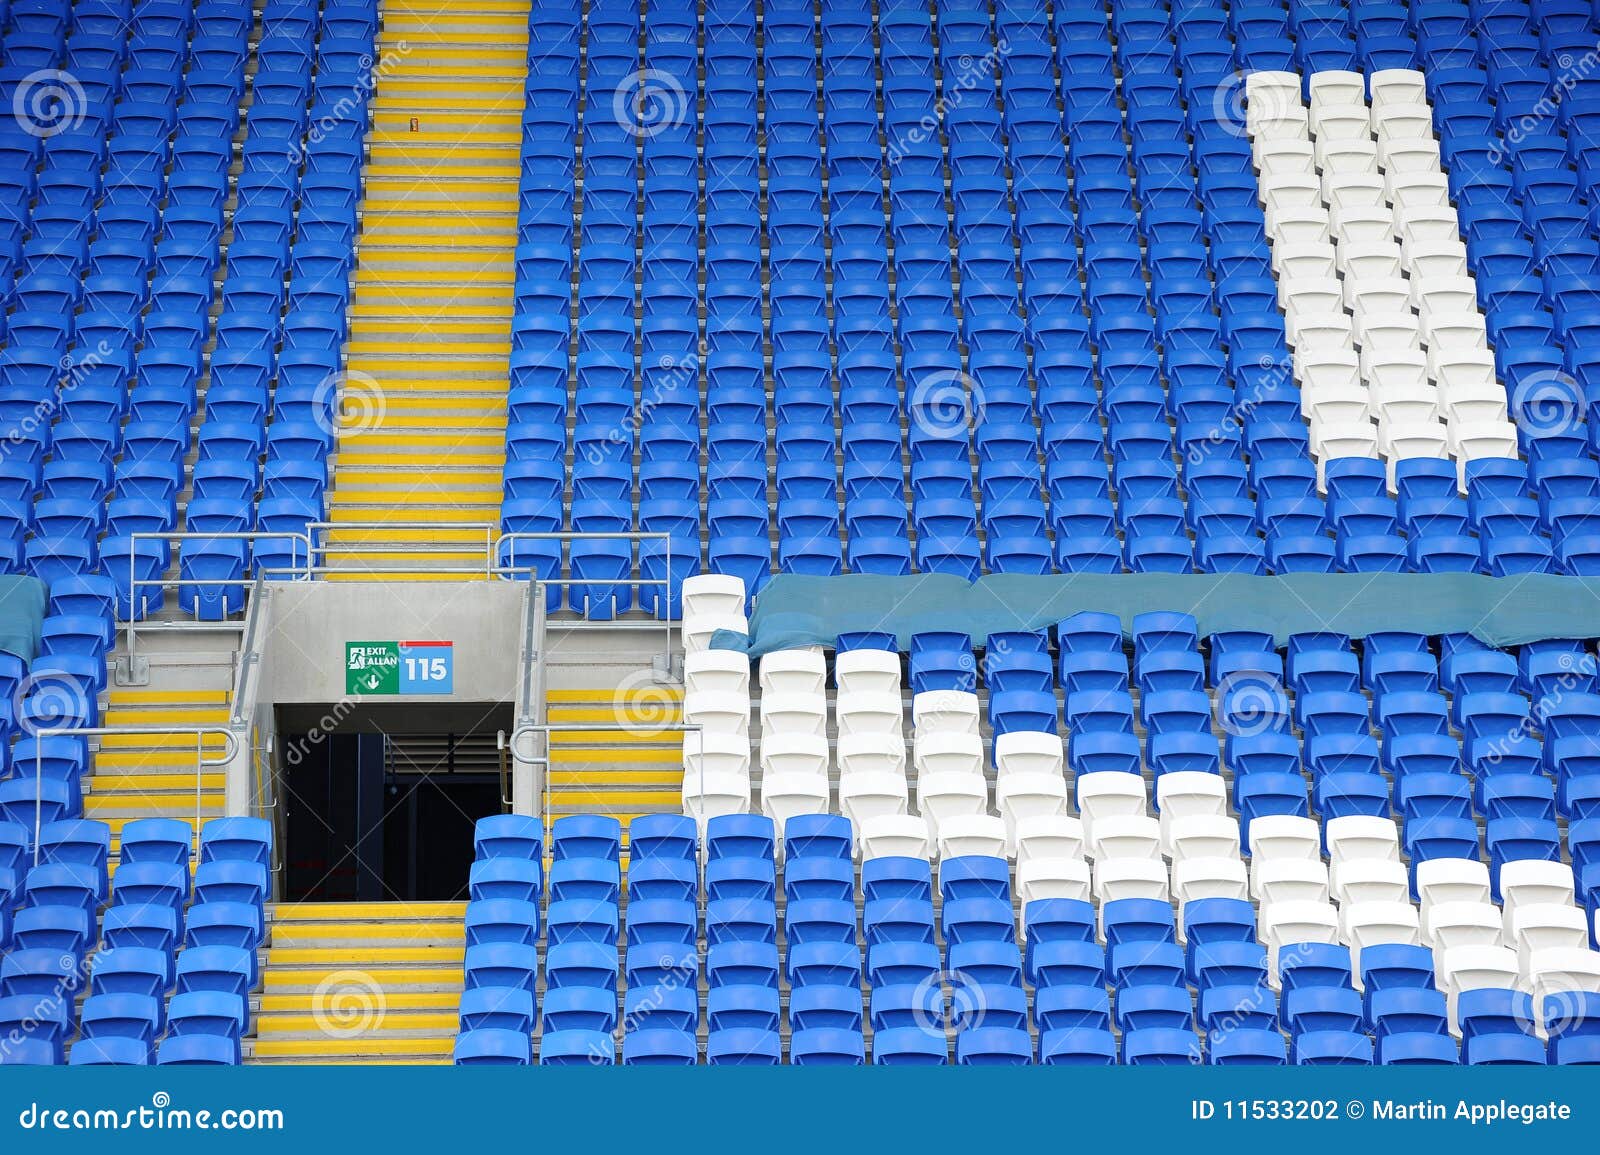 terraced stadium seating